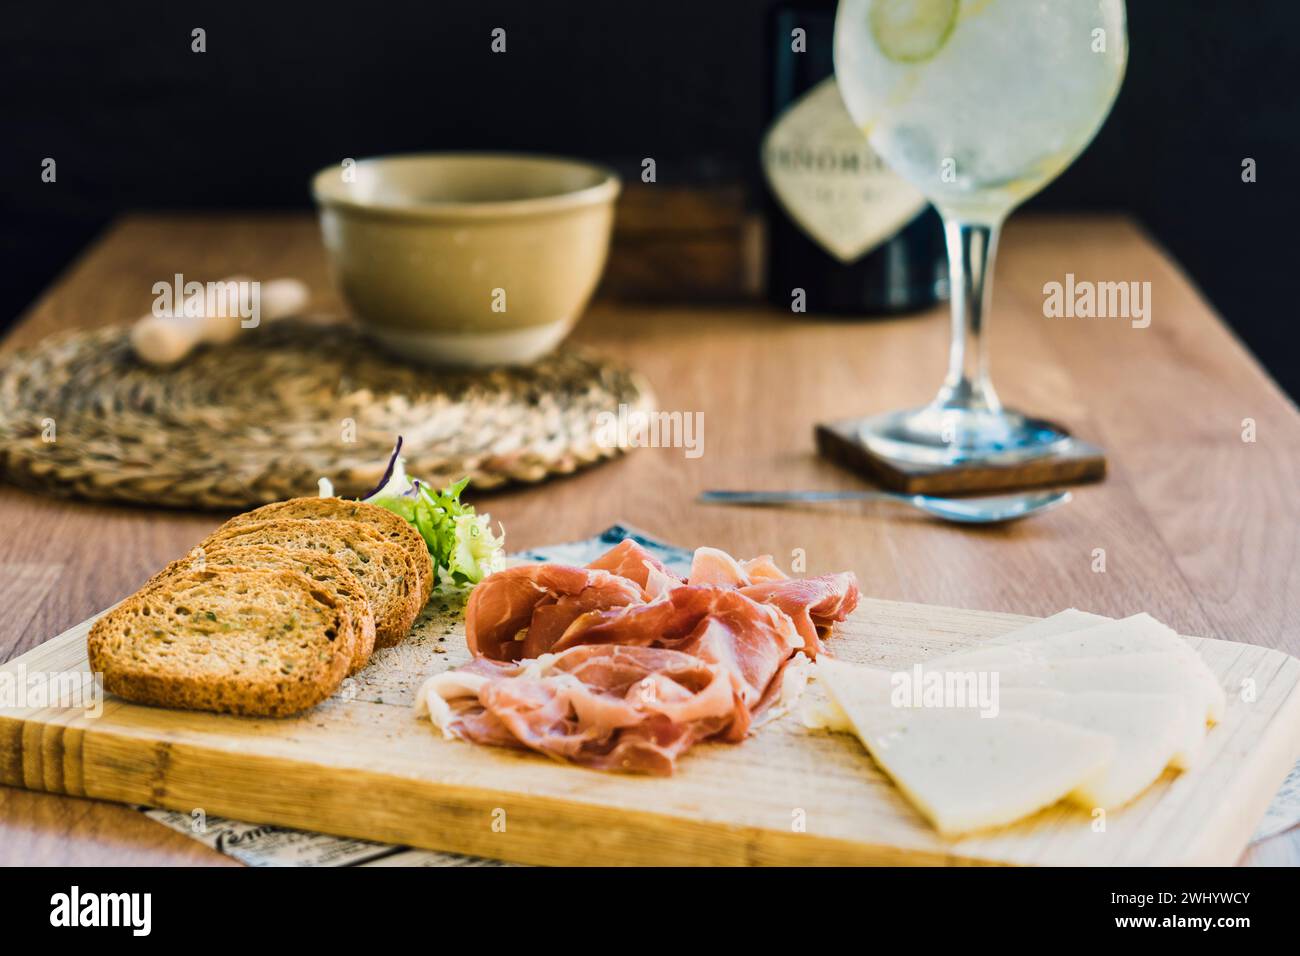 Un assortimento di carni, pane e bevande su un tavolo, aperitivo italiano Foto Stock